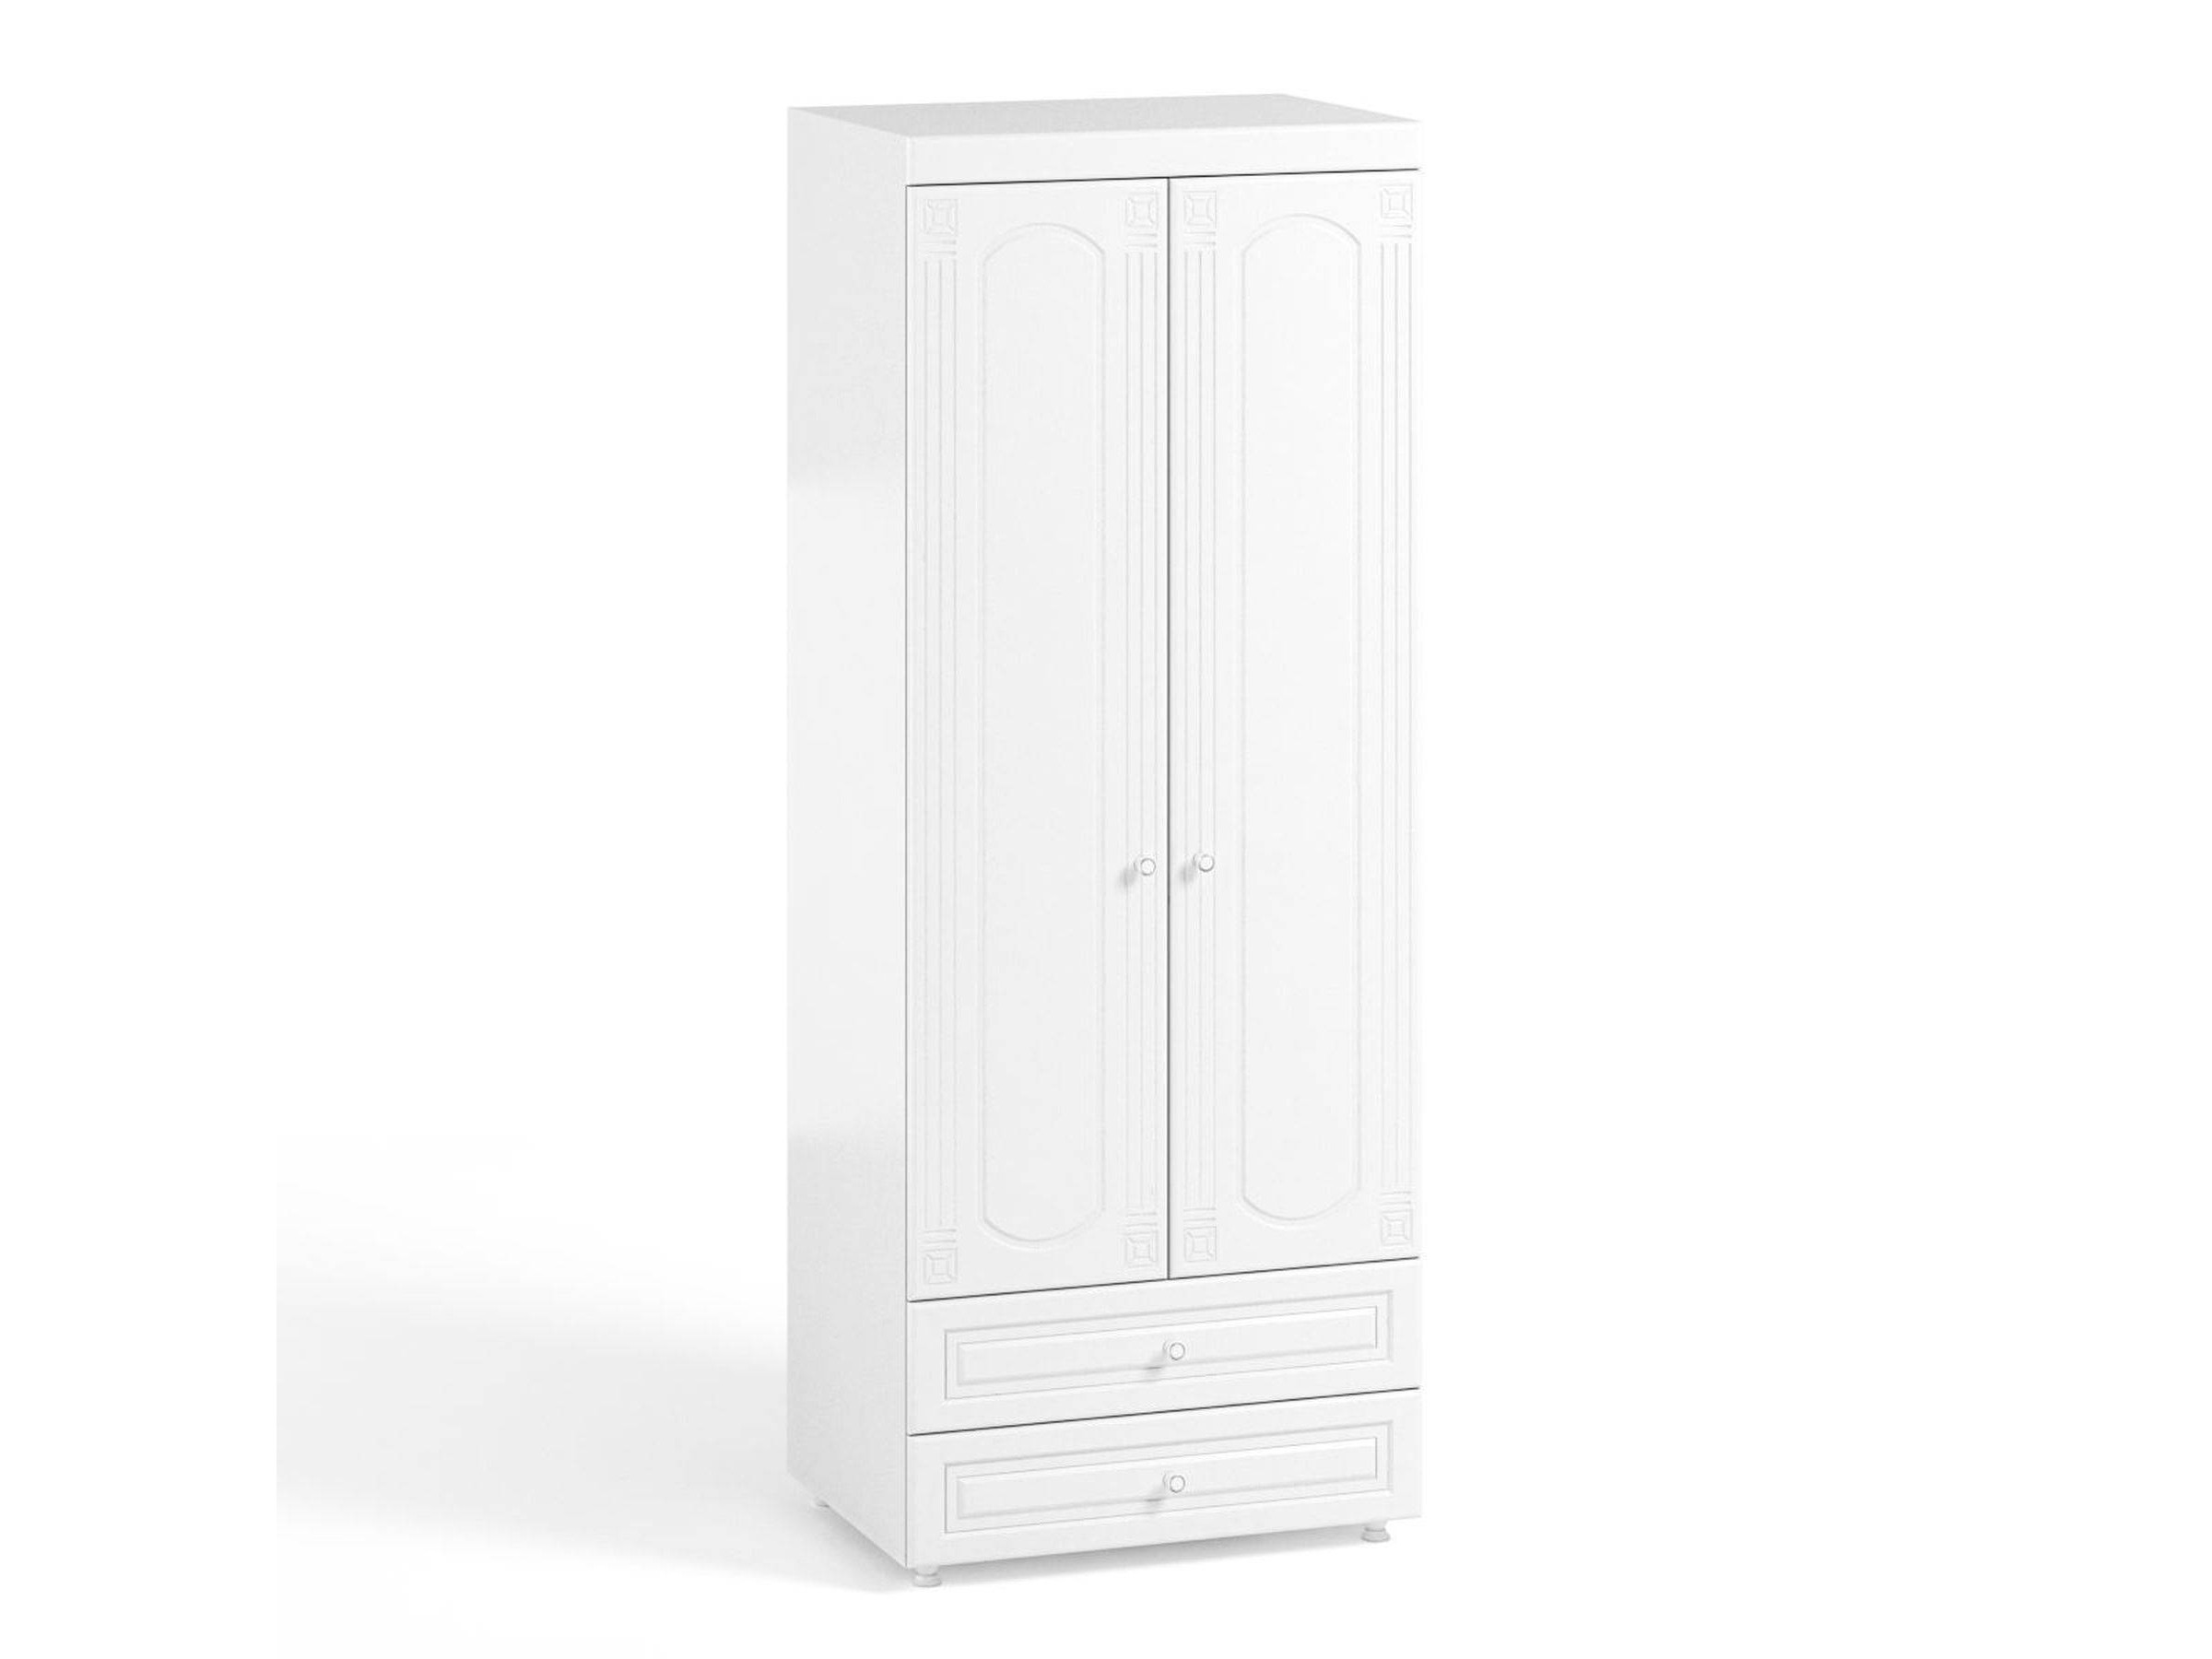 Шкаф 2-х дверный с ящиками (гл.560) Афина АФ-49 белое дерево Белое дерево, Белый, МДФ, ЛДСП афина сб 2230 шкаф 2 х дверный